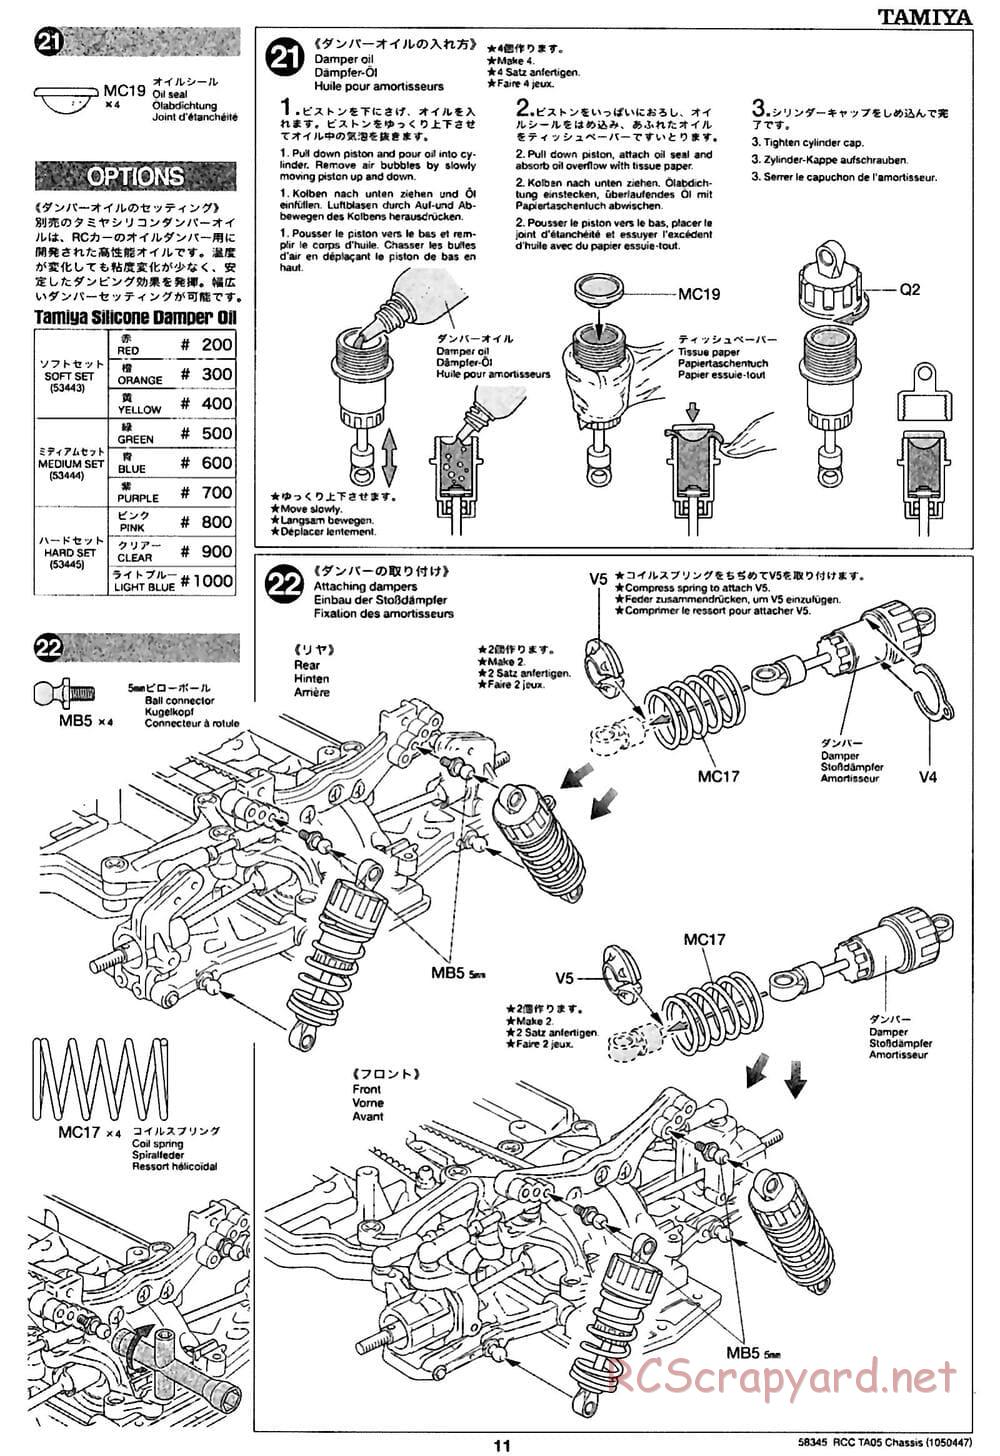 Tamiya - TA05 Chassis - Manual - Page 11